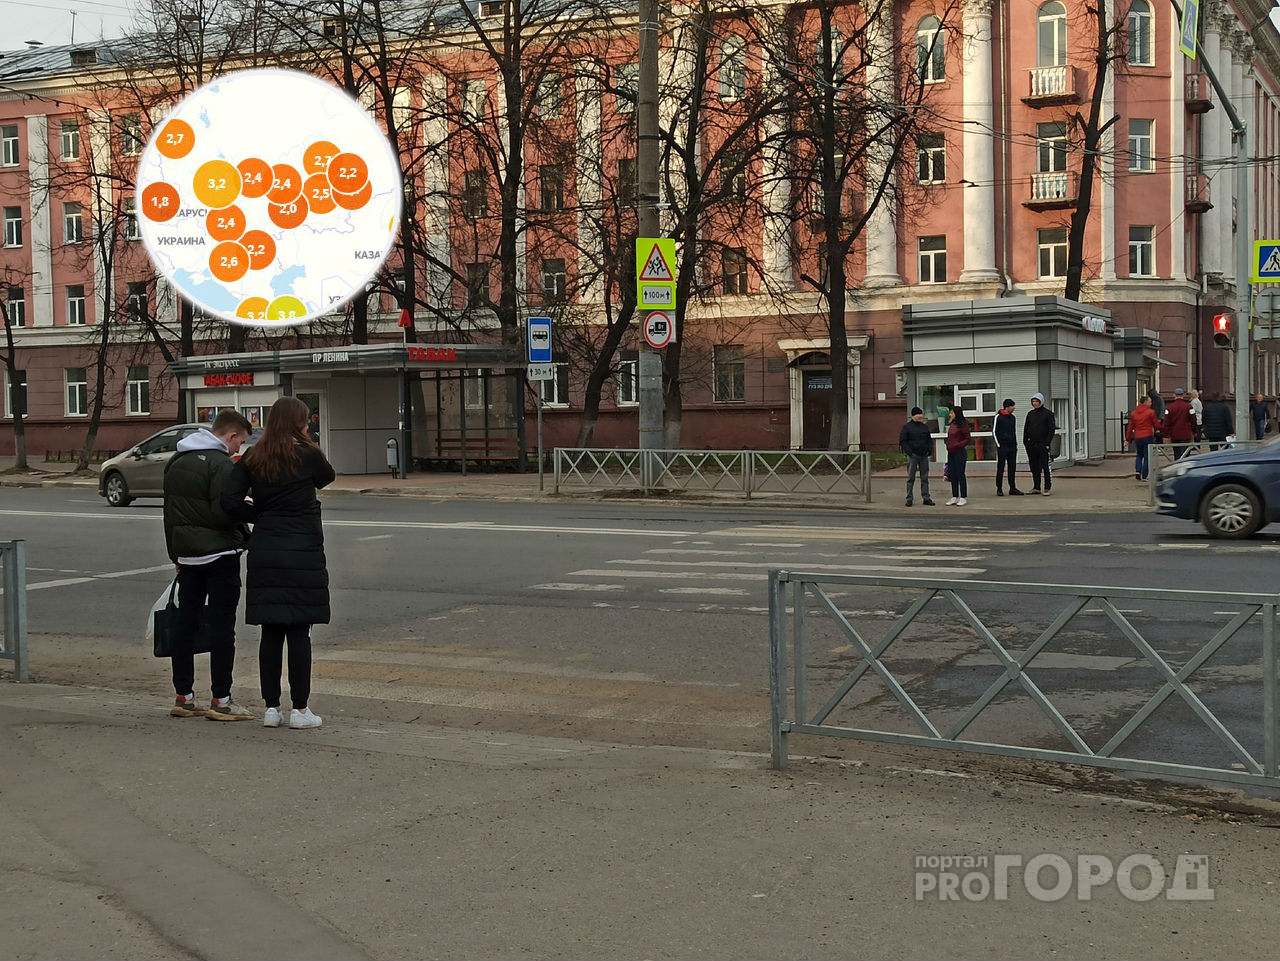 "Карты покраснели": индекс самоизоляции резко упал в Ярославле